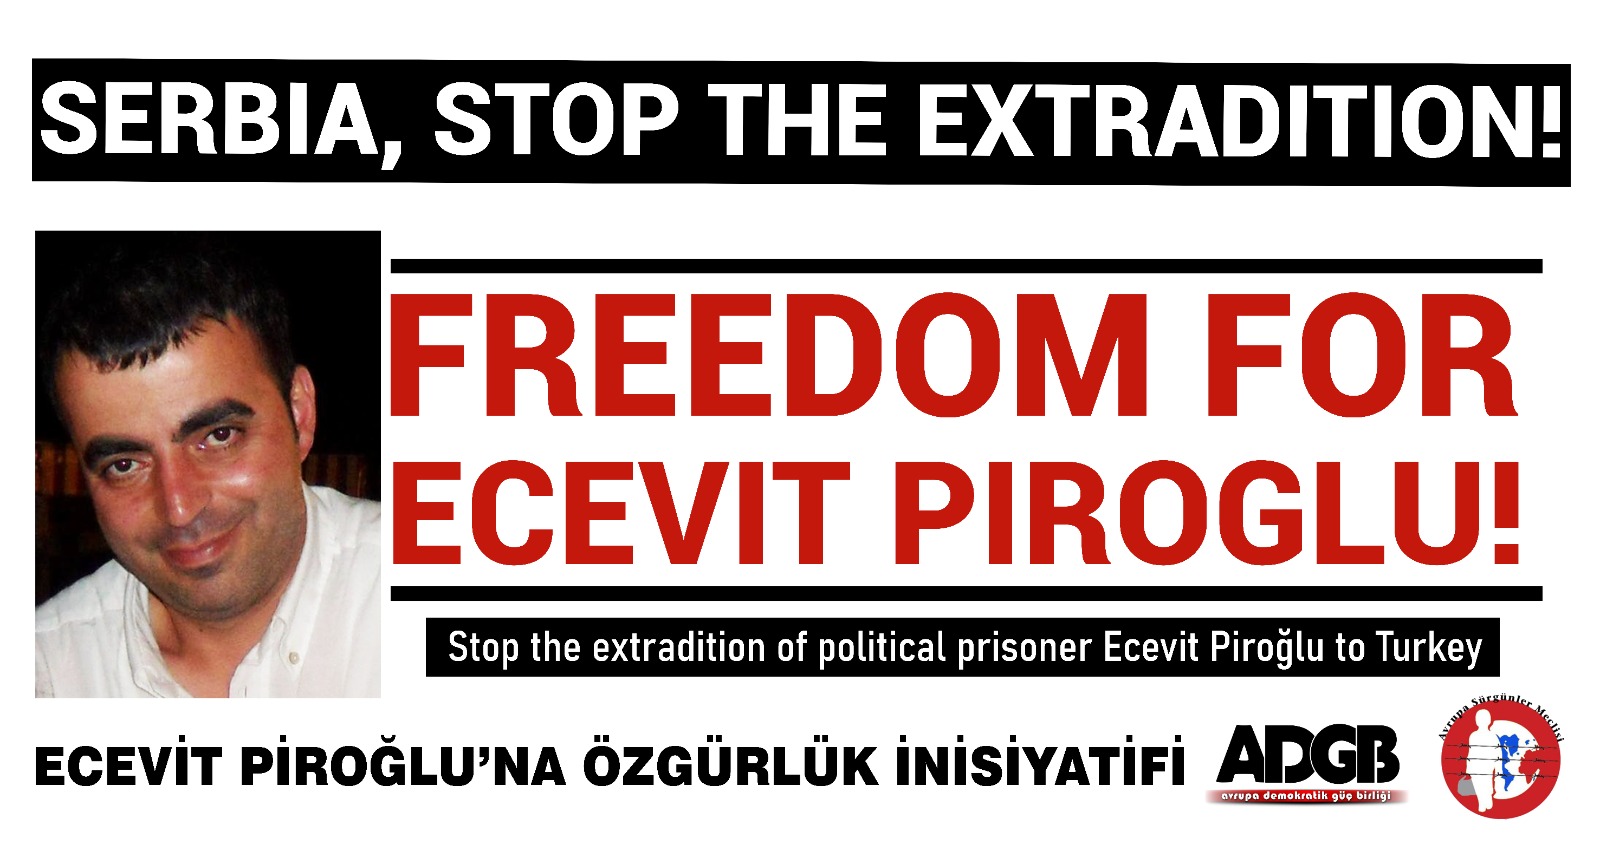 Κάλεσμα στήριξης από την Πρωτοβουλία Ελευθερίας για τον Ecevit Piroğlu